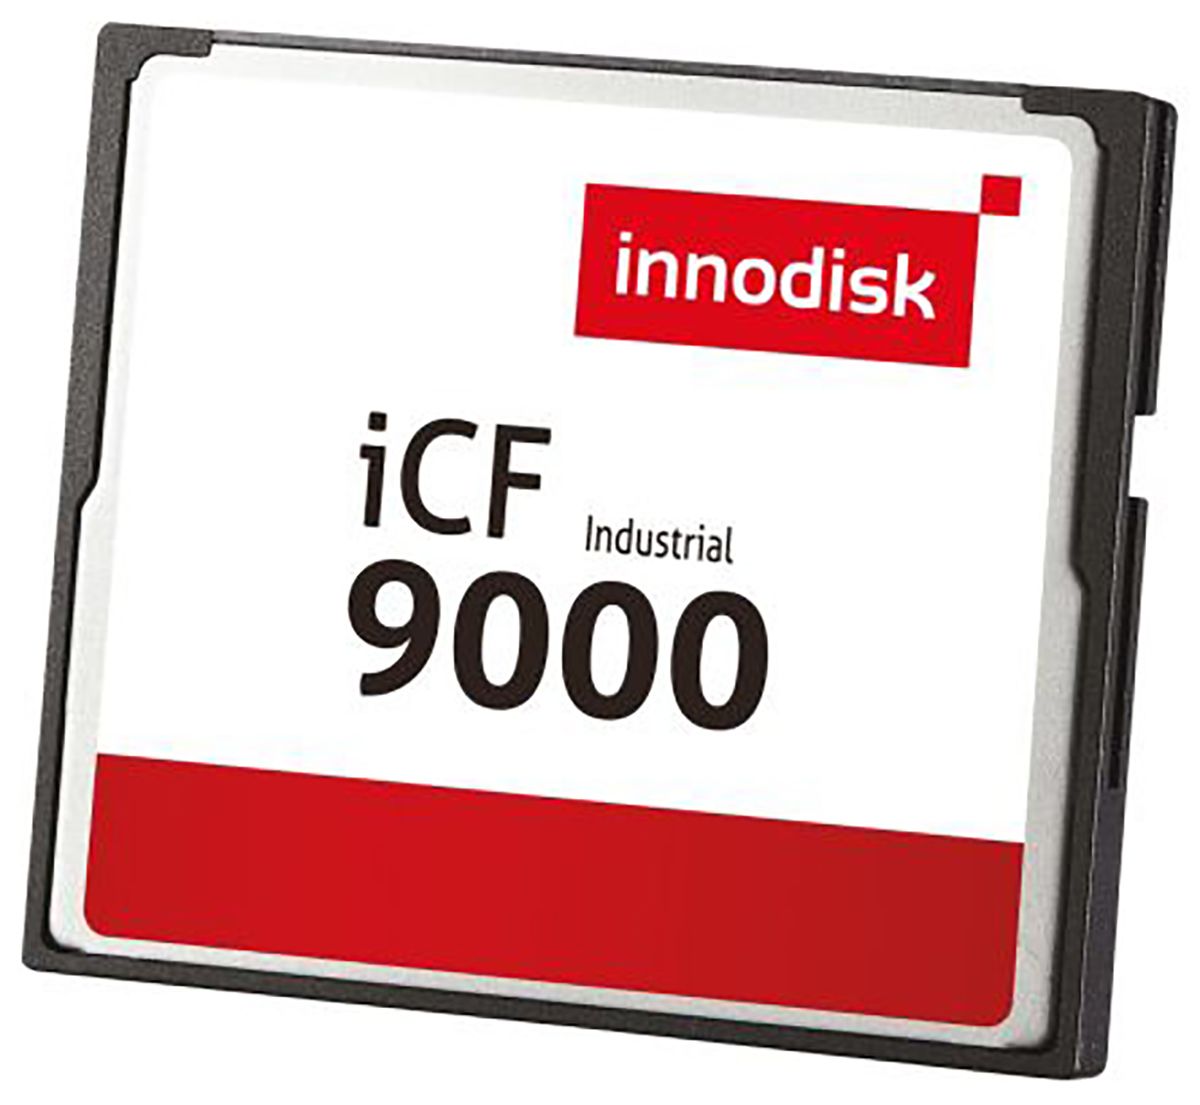 InnoDisk iCF9000 Industrial 4 GB SLC Compact Flash Card